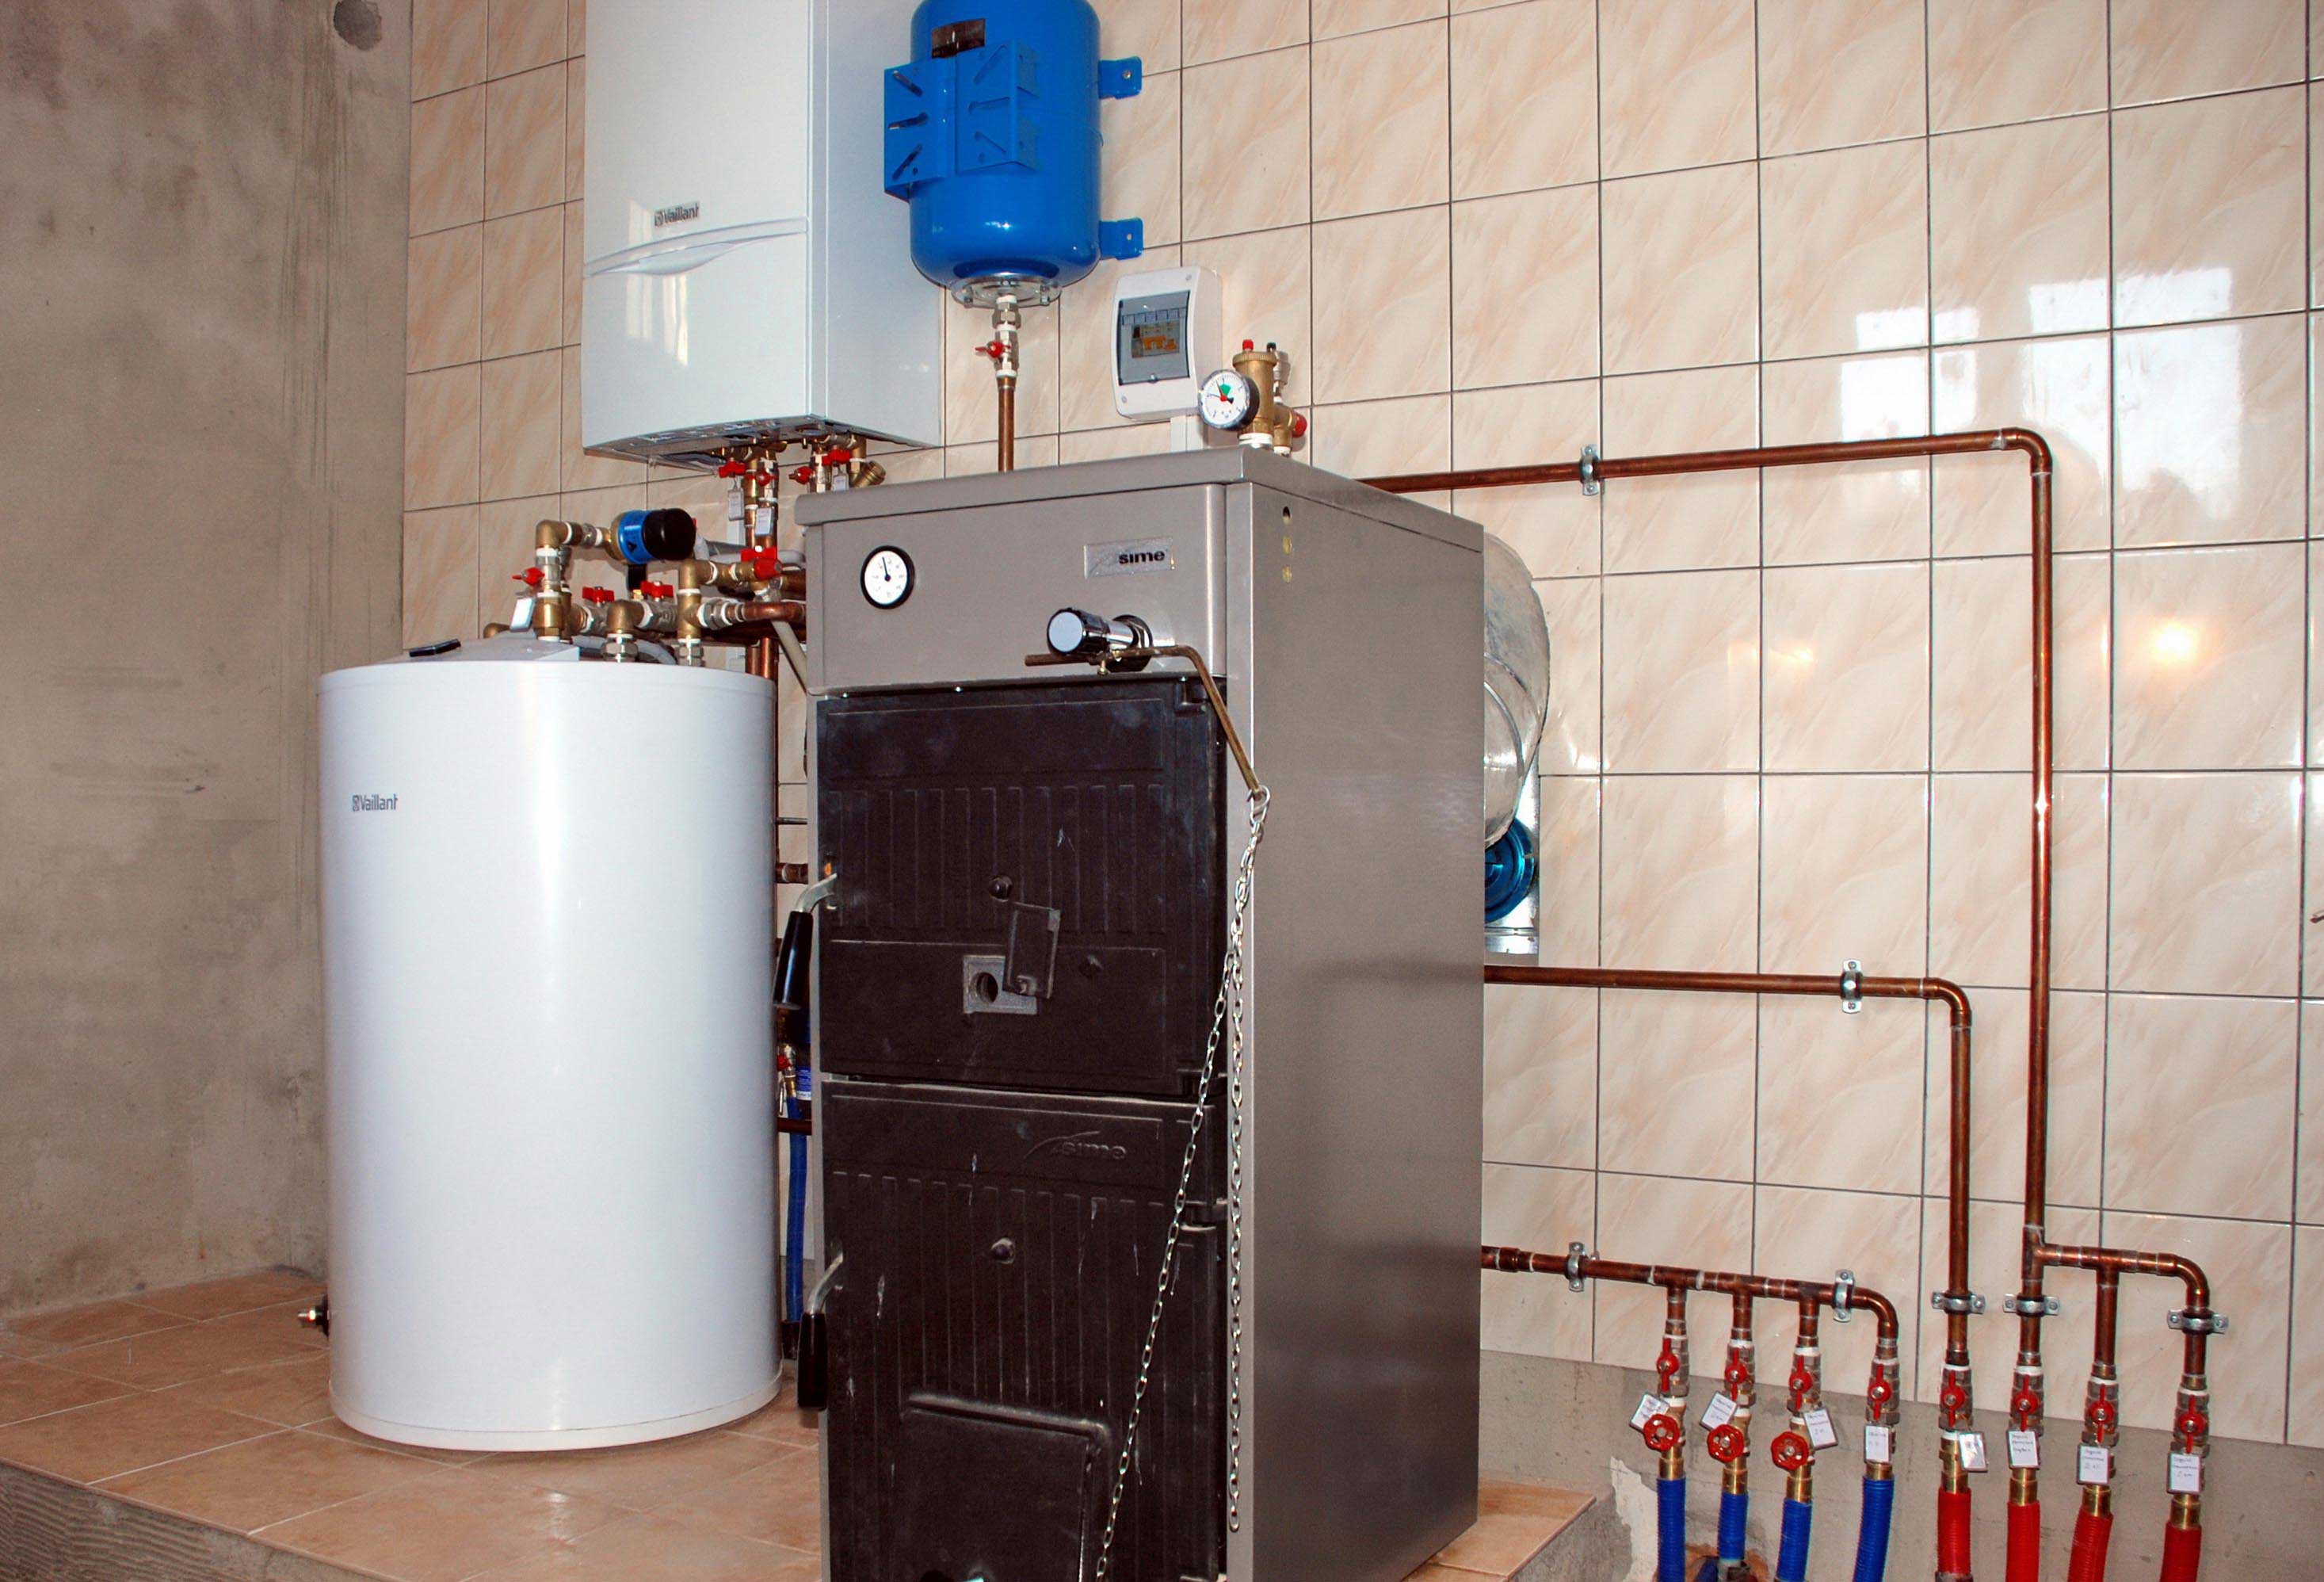 Газовое отопление в частном доме: выбор газового котла, характеристики схем отопления, этапы и последовательность монтажа оборудования